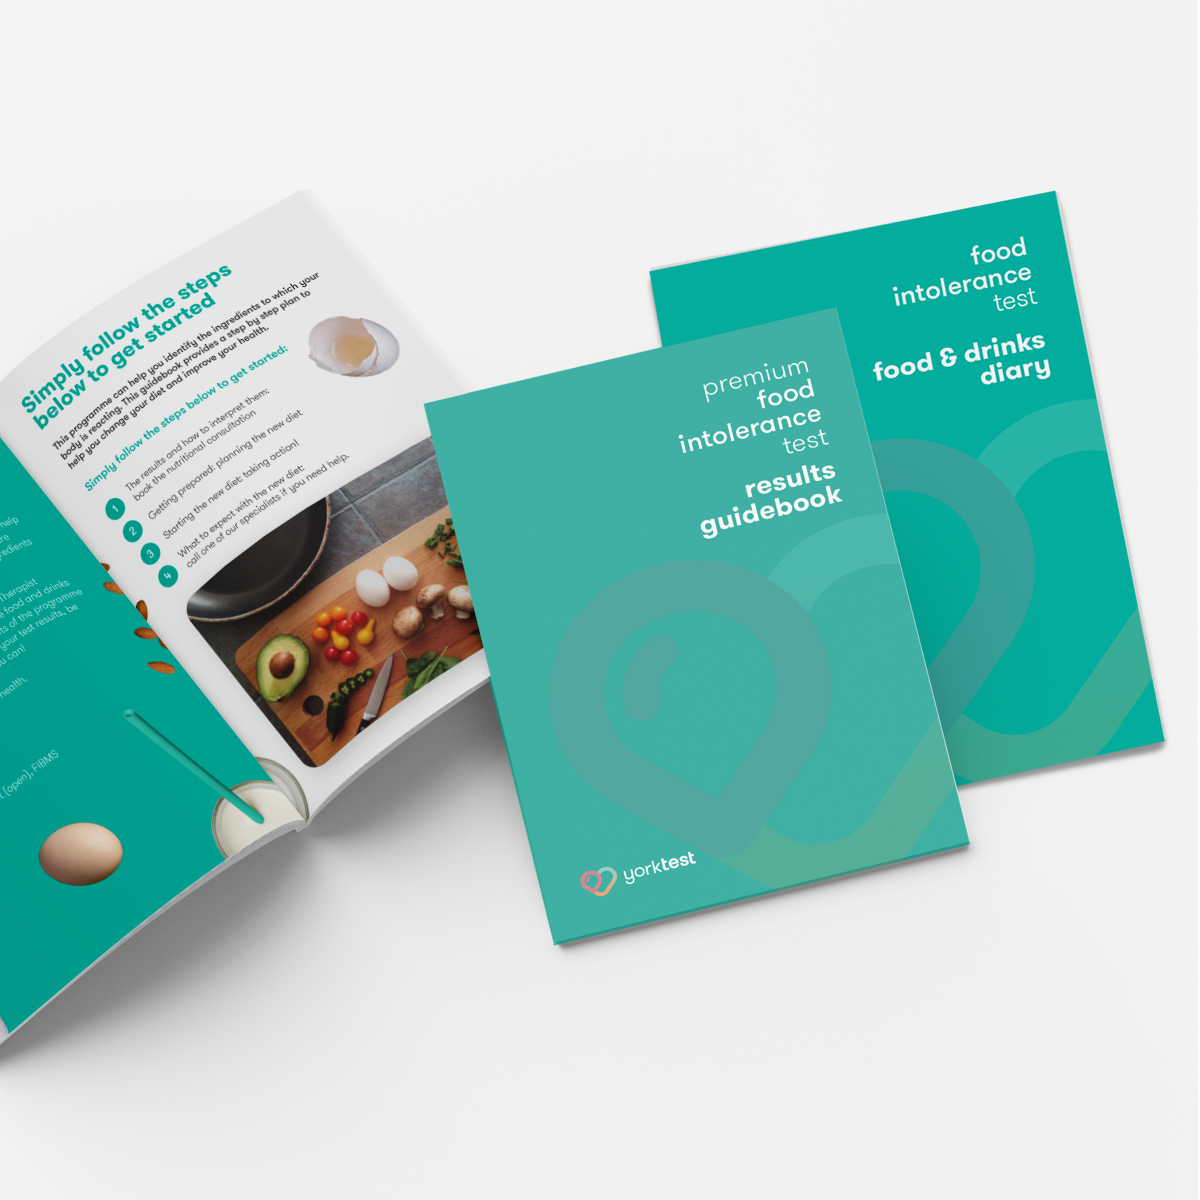 premium food intolerance test guidebook